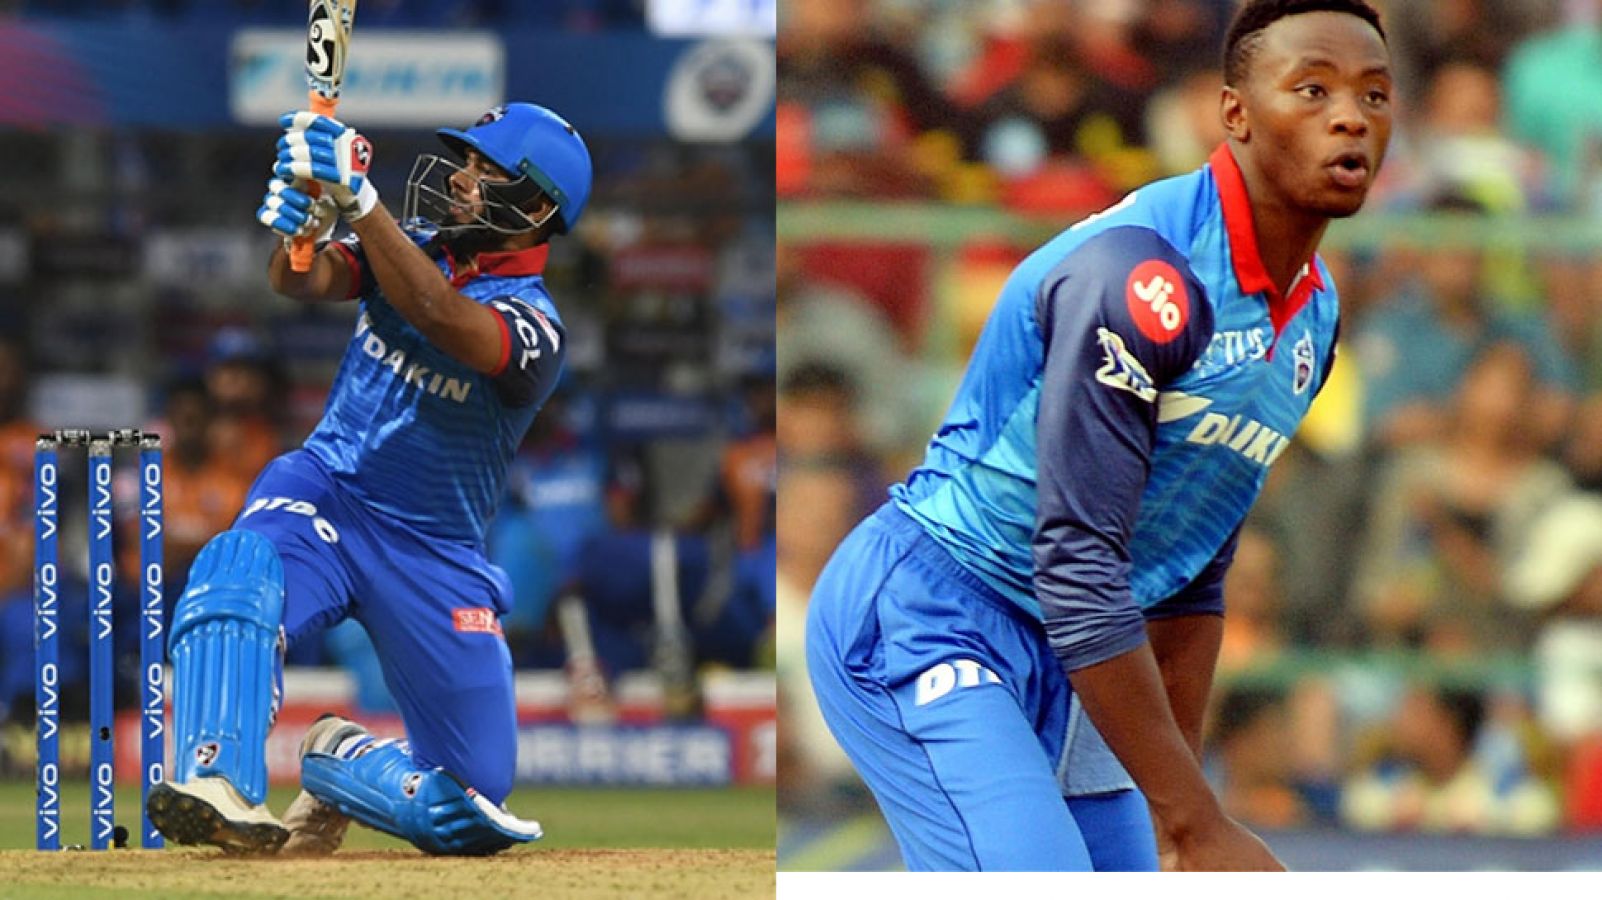 IPL 2019: आज दूसरे स्थान के लिए लड़ेंगे मुंबई और दिल्ली, पंत और रबाडा पर होगी निगाहें